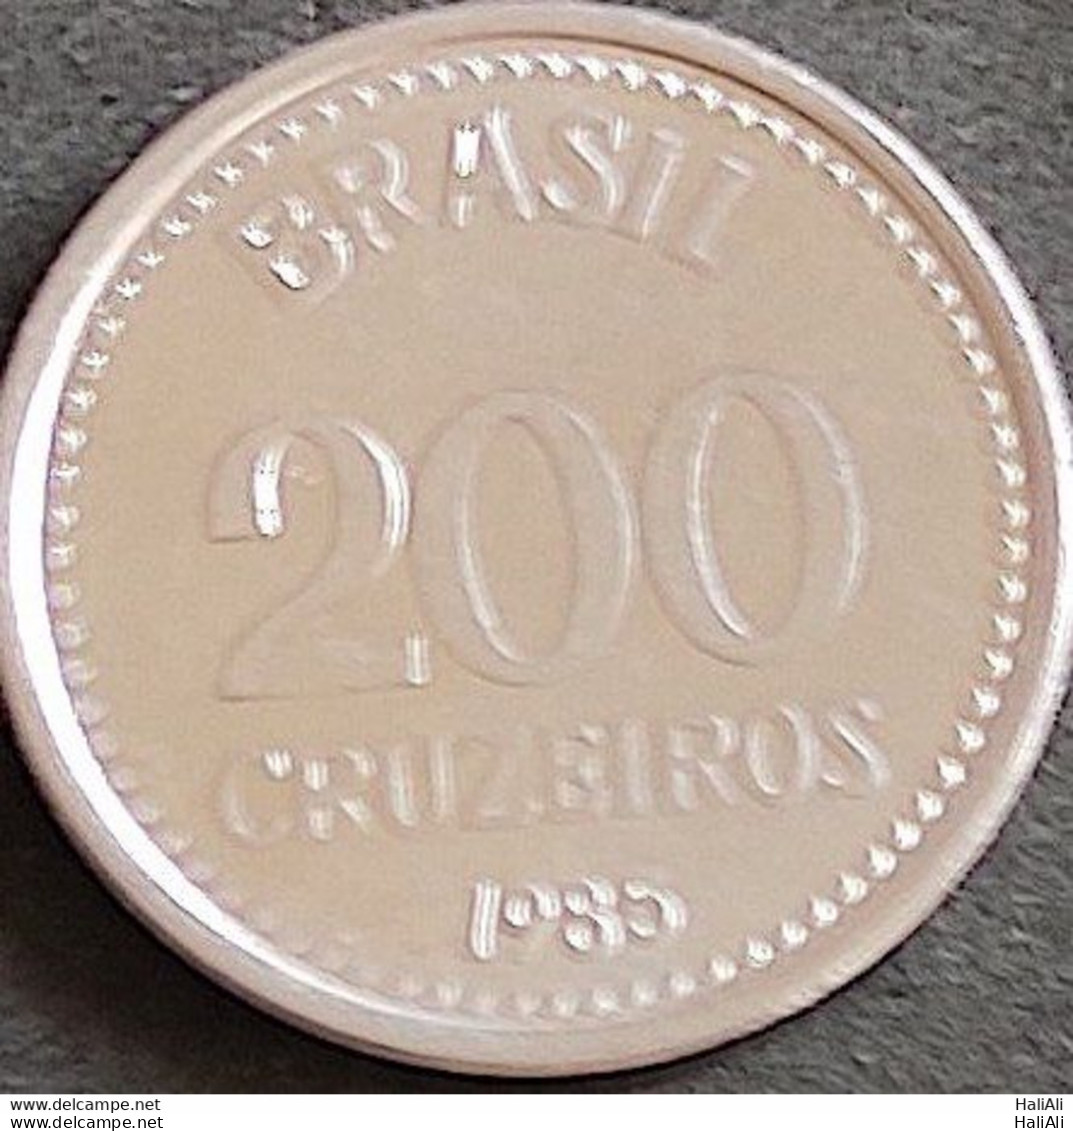 Coin Brazil Moeda Brasil 1985 200 Cruzeiros 1 - Brasil